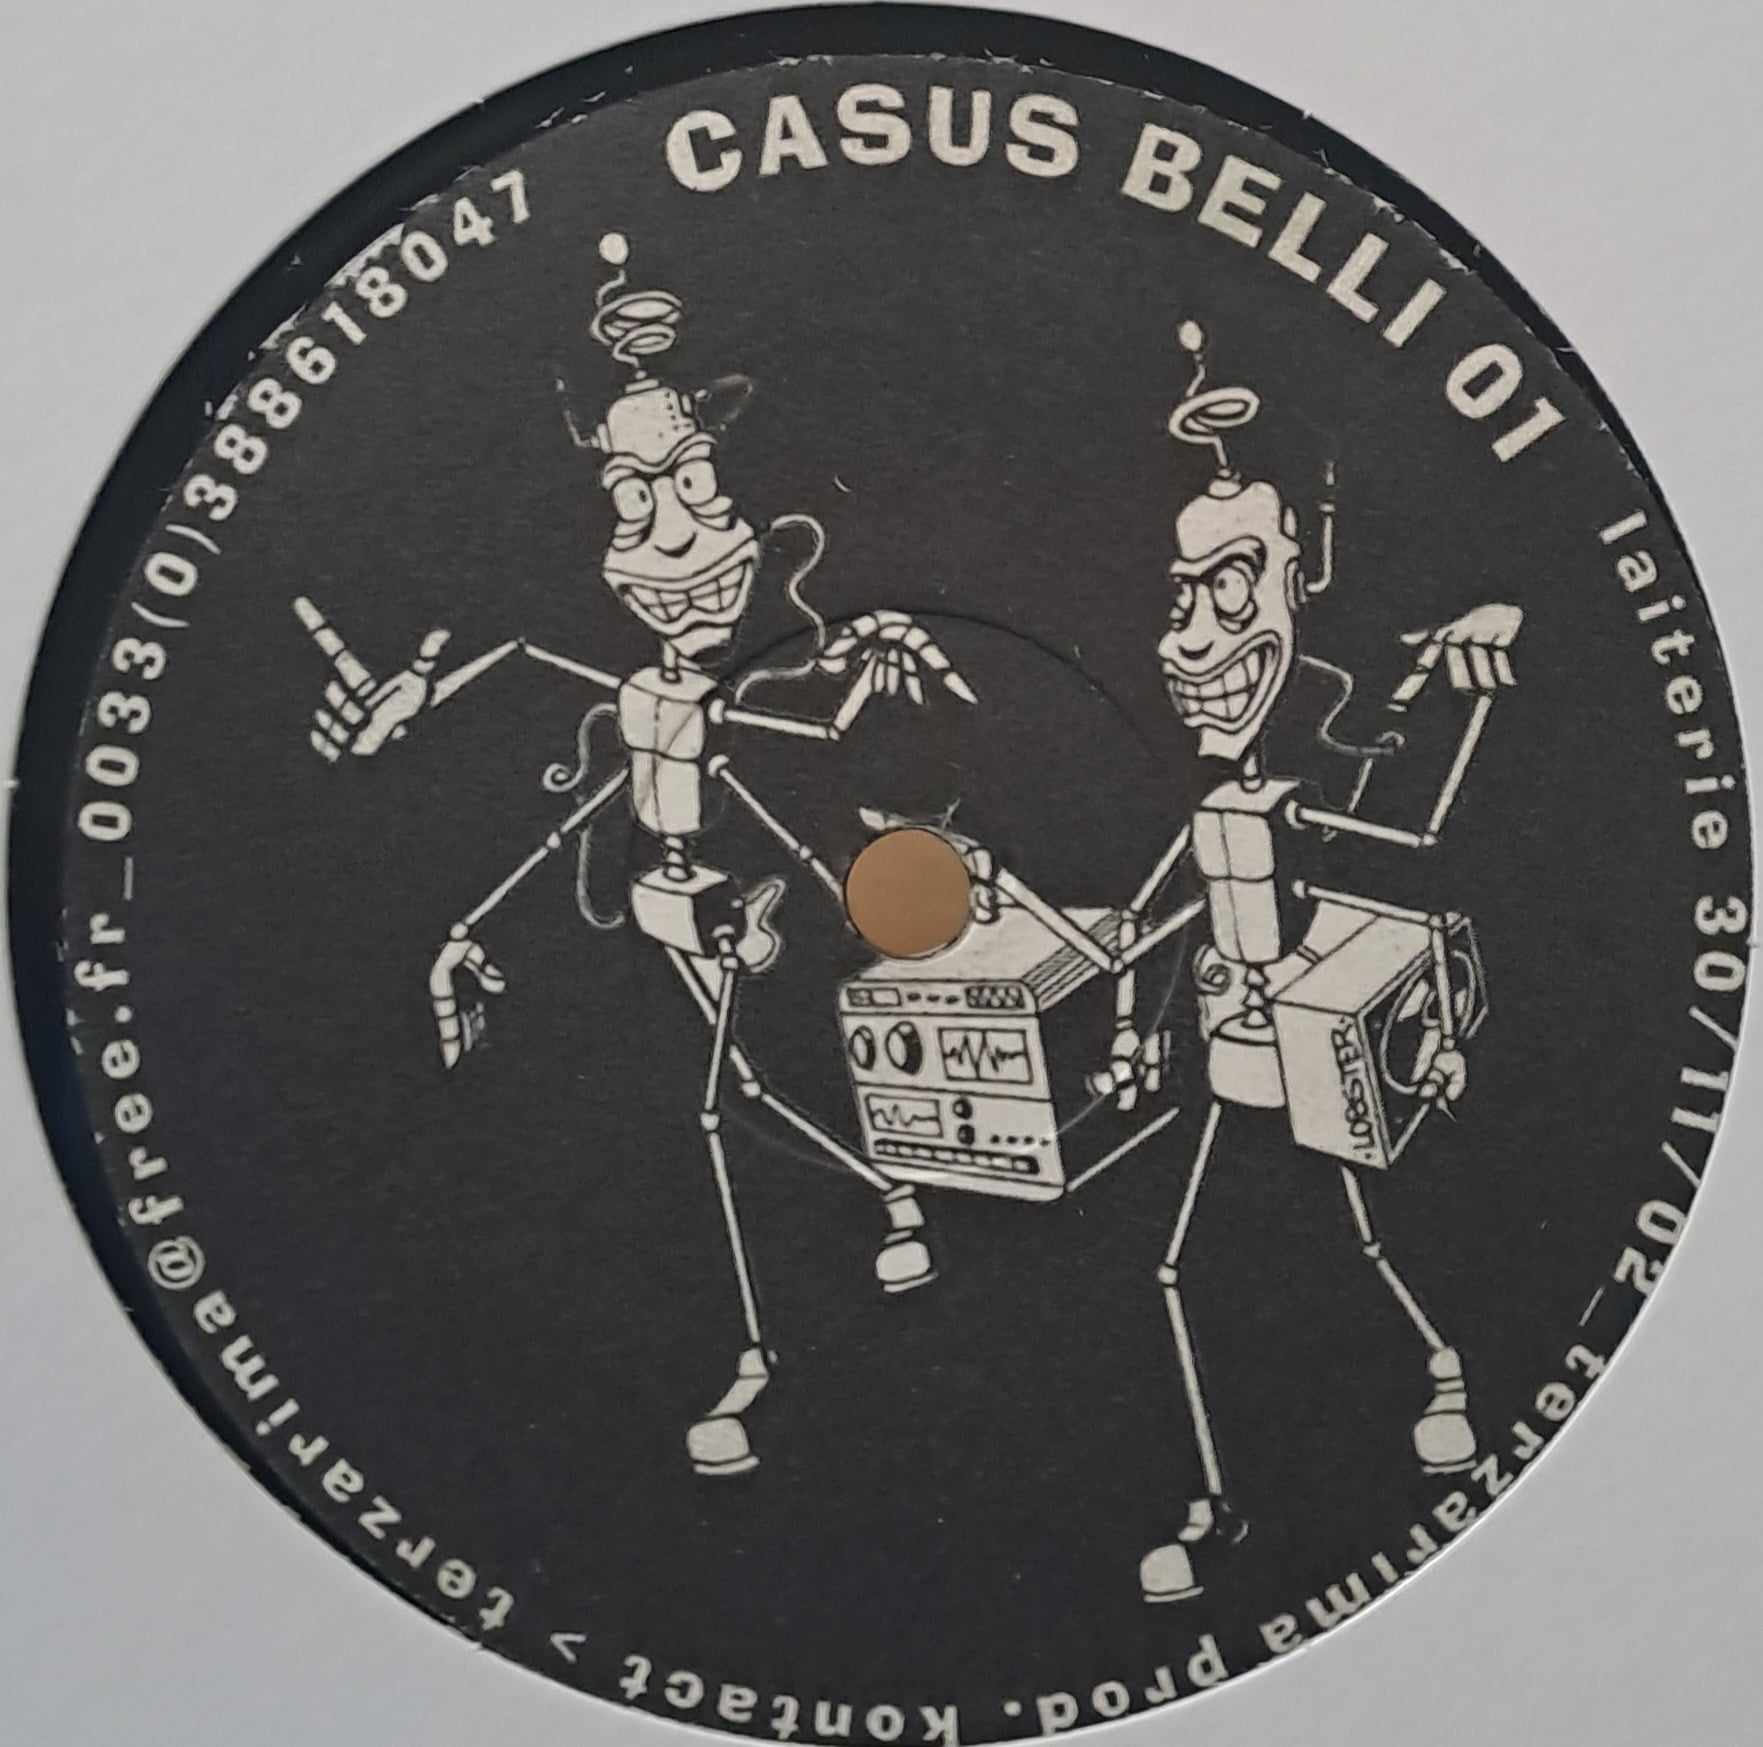 Casus Belli 01 - vinyle freetekno